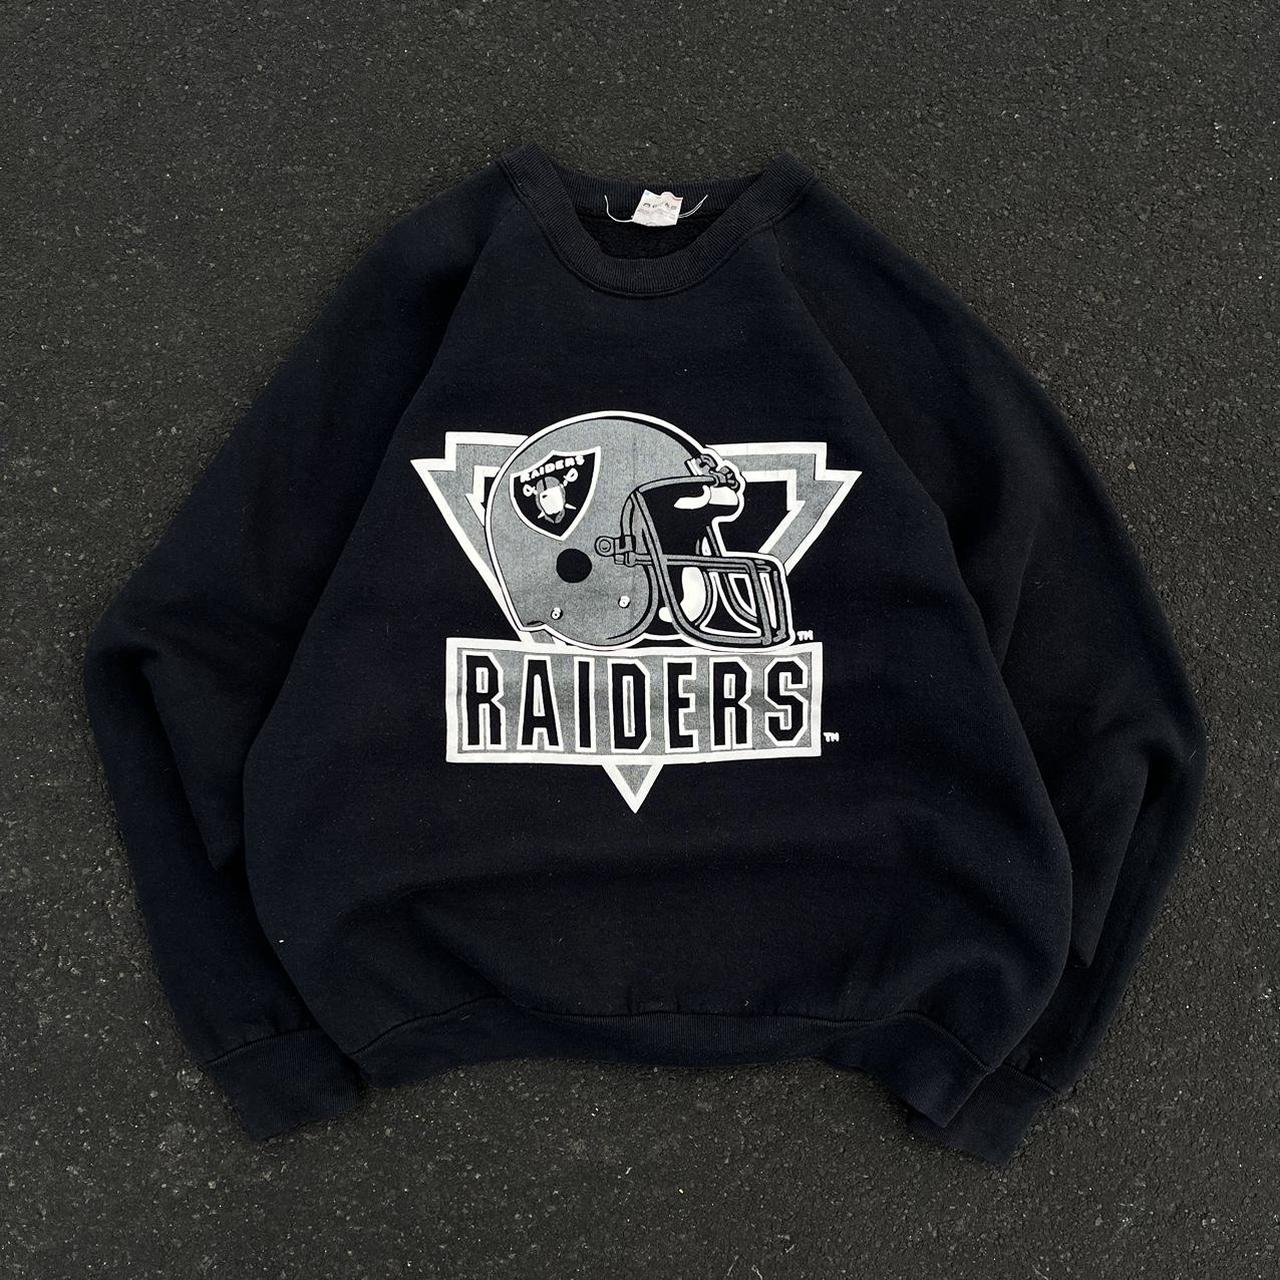 Vintage 80s NFL Raiders Crewneck Sweatshirt Tagged - Depop